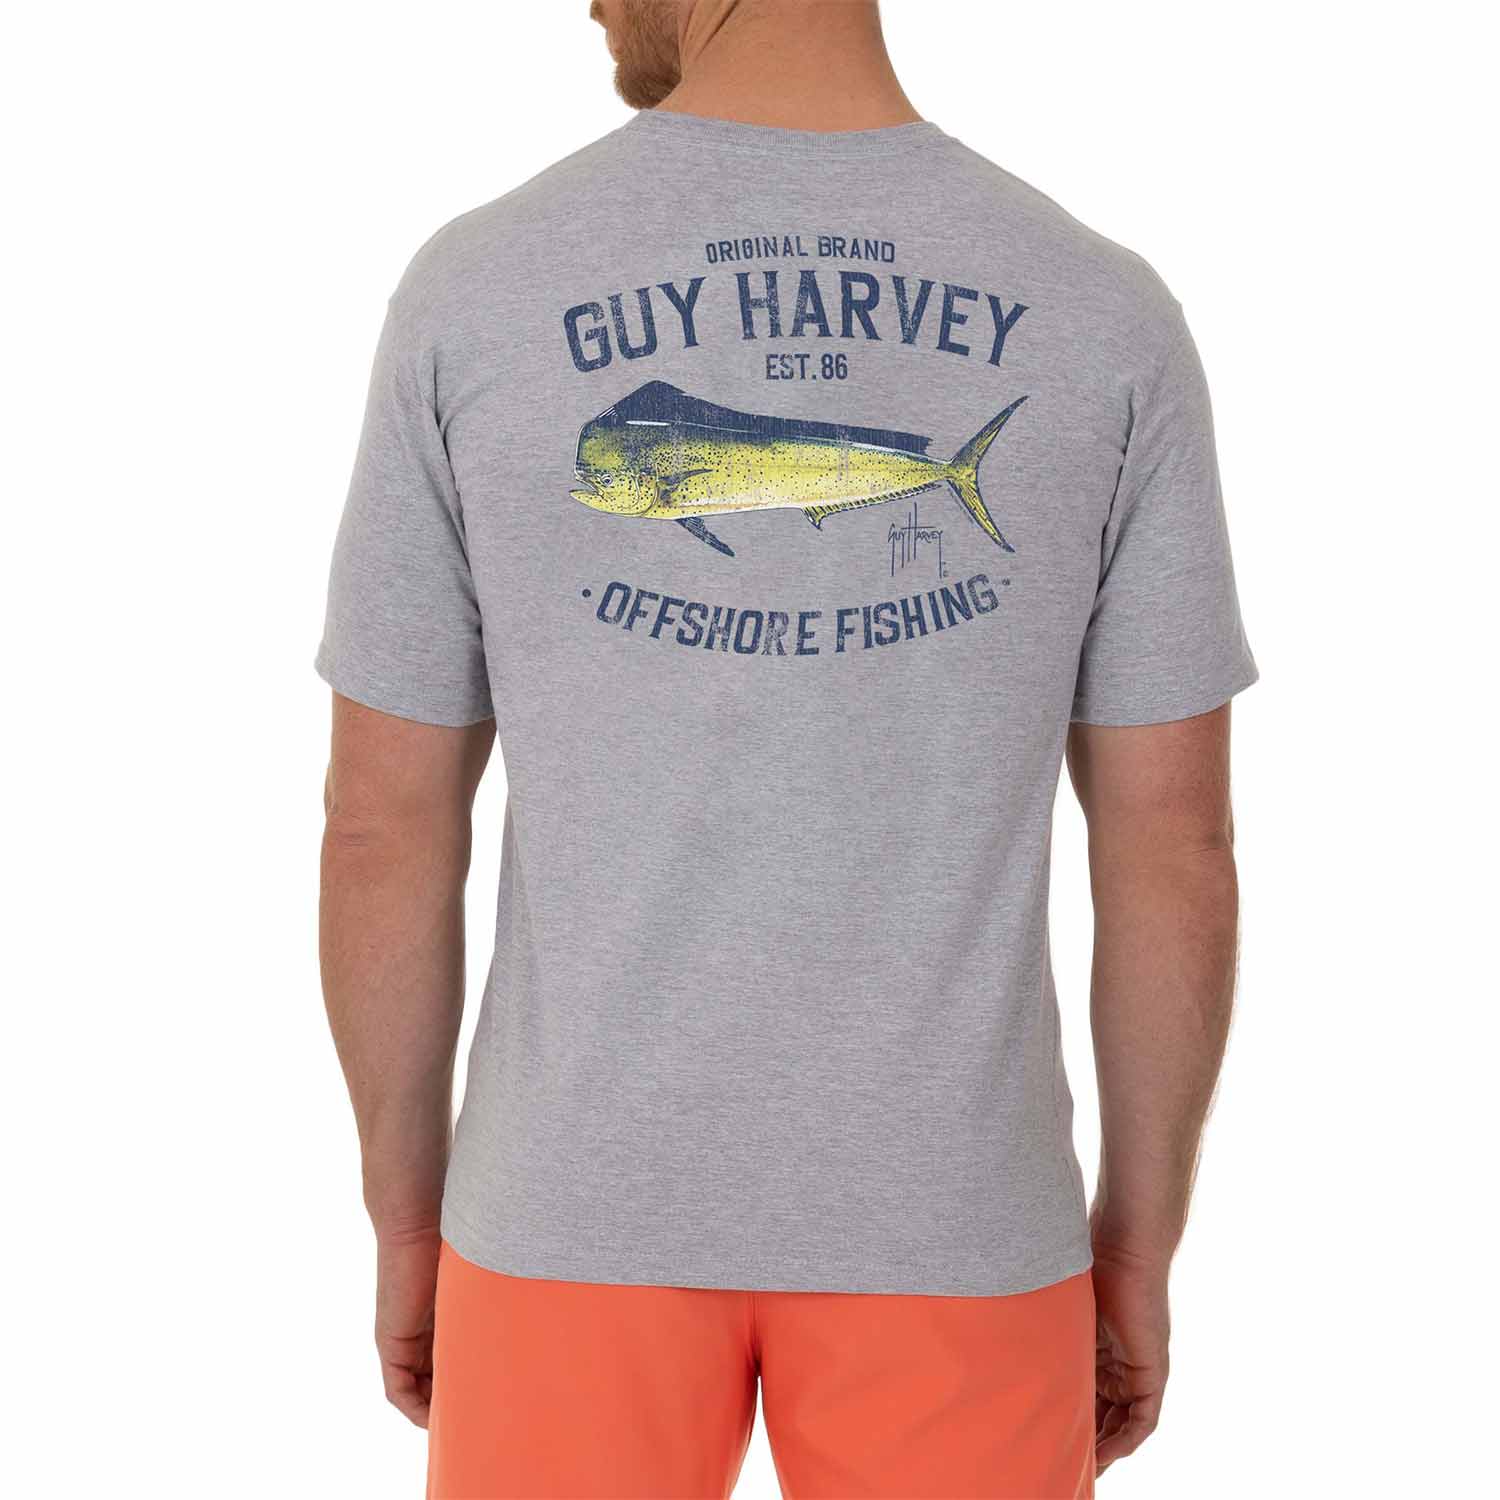 GUY HARVEY Men's Offshore Fishing Shirt